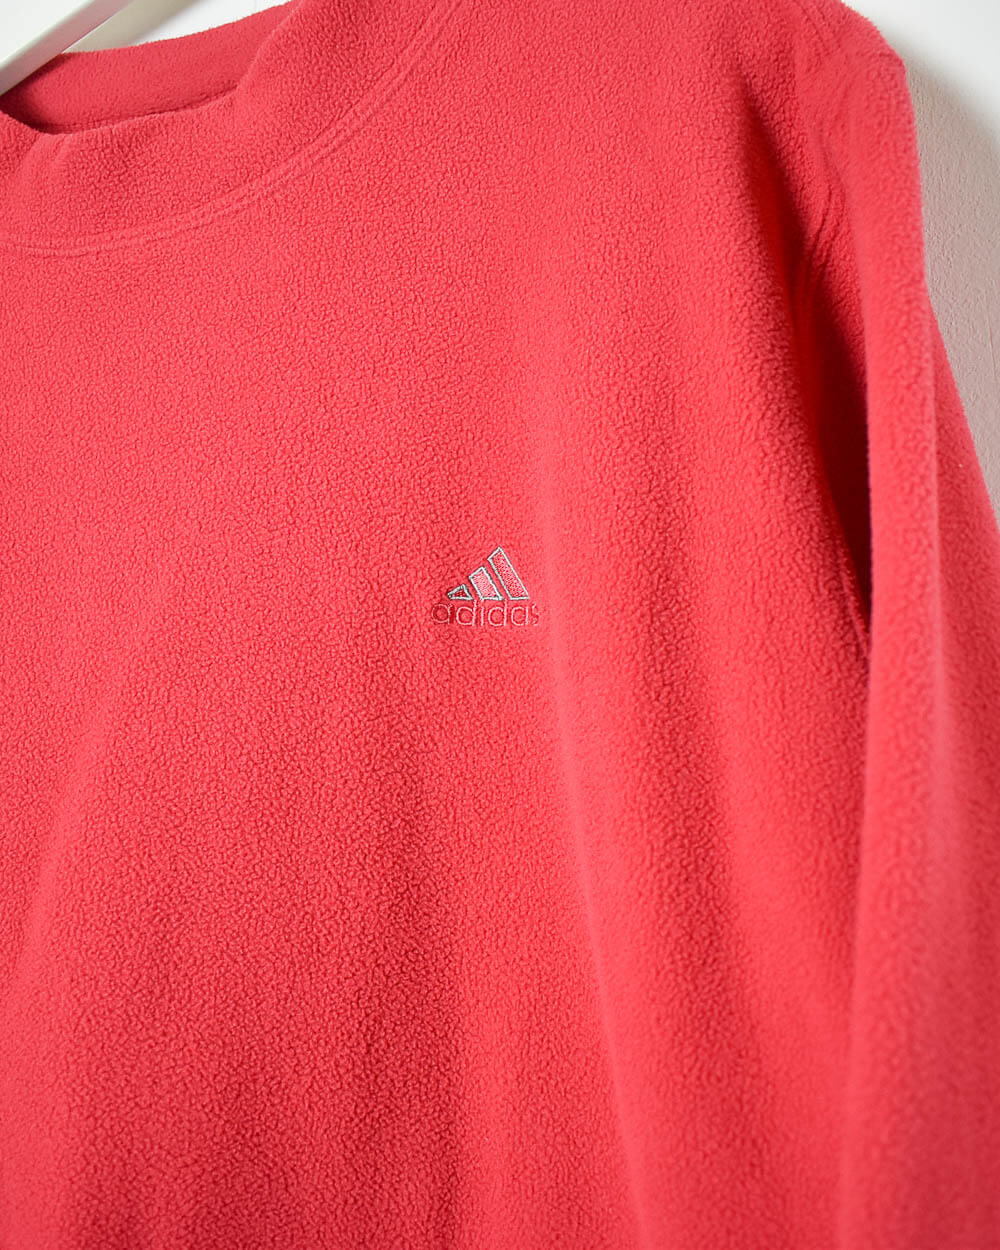 Red Adidas Pullover Fleece - Medium